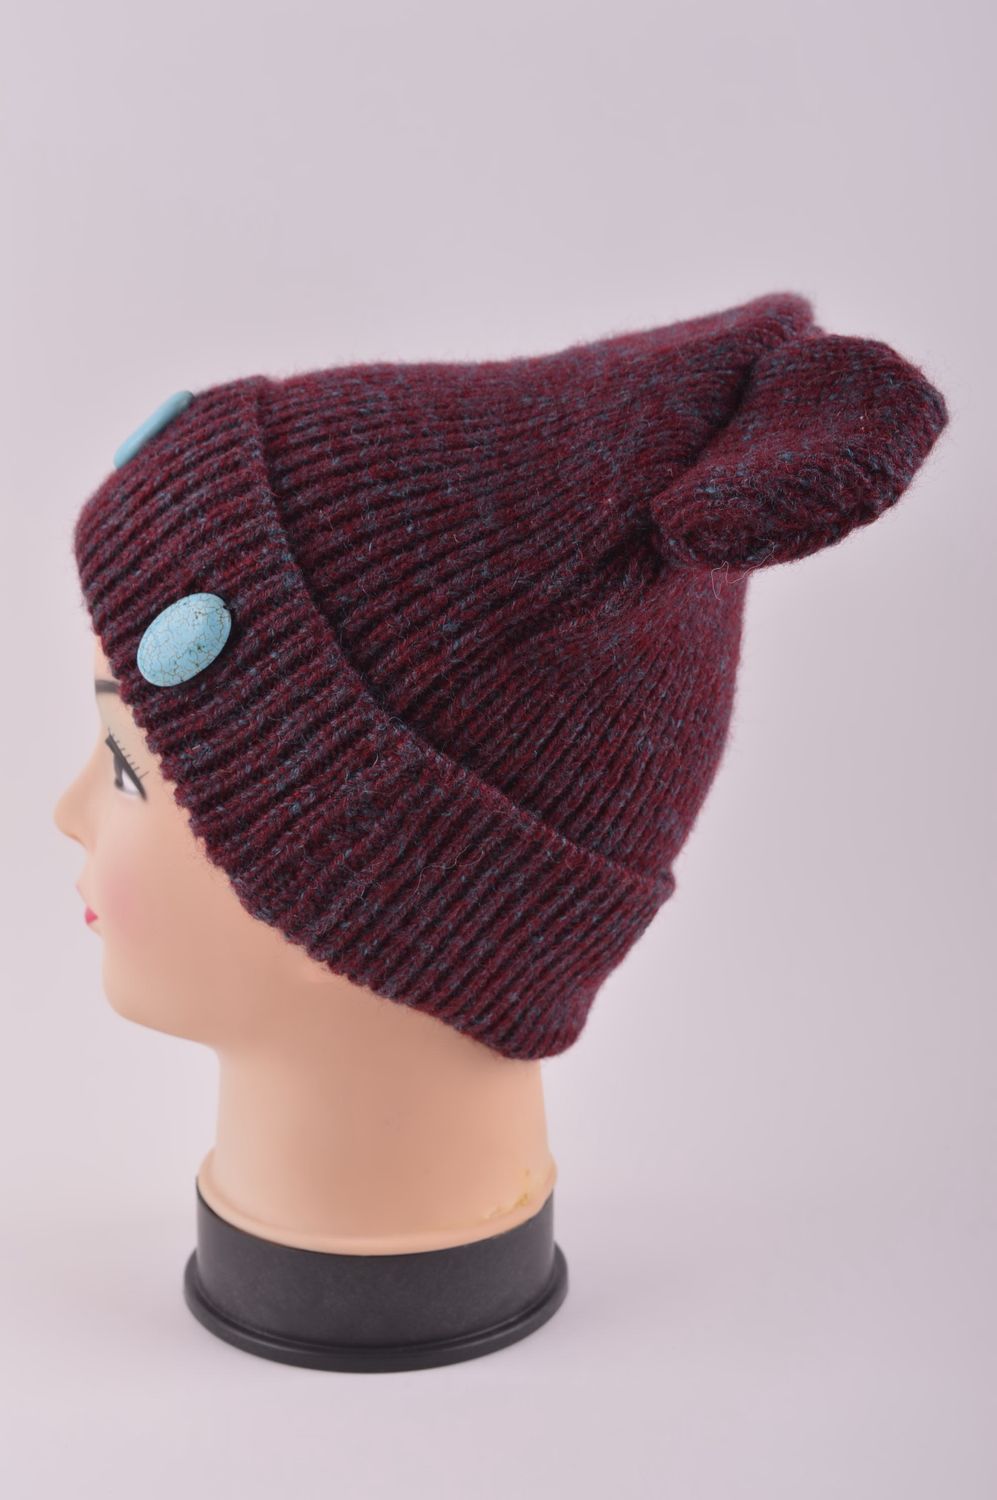 Hand-knitted woolen winter hat handmade hat winter accessories warm hat photo 3